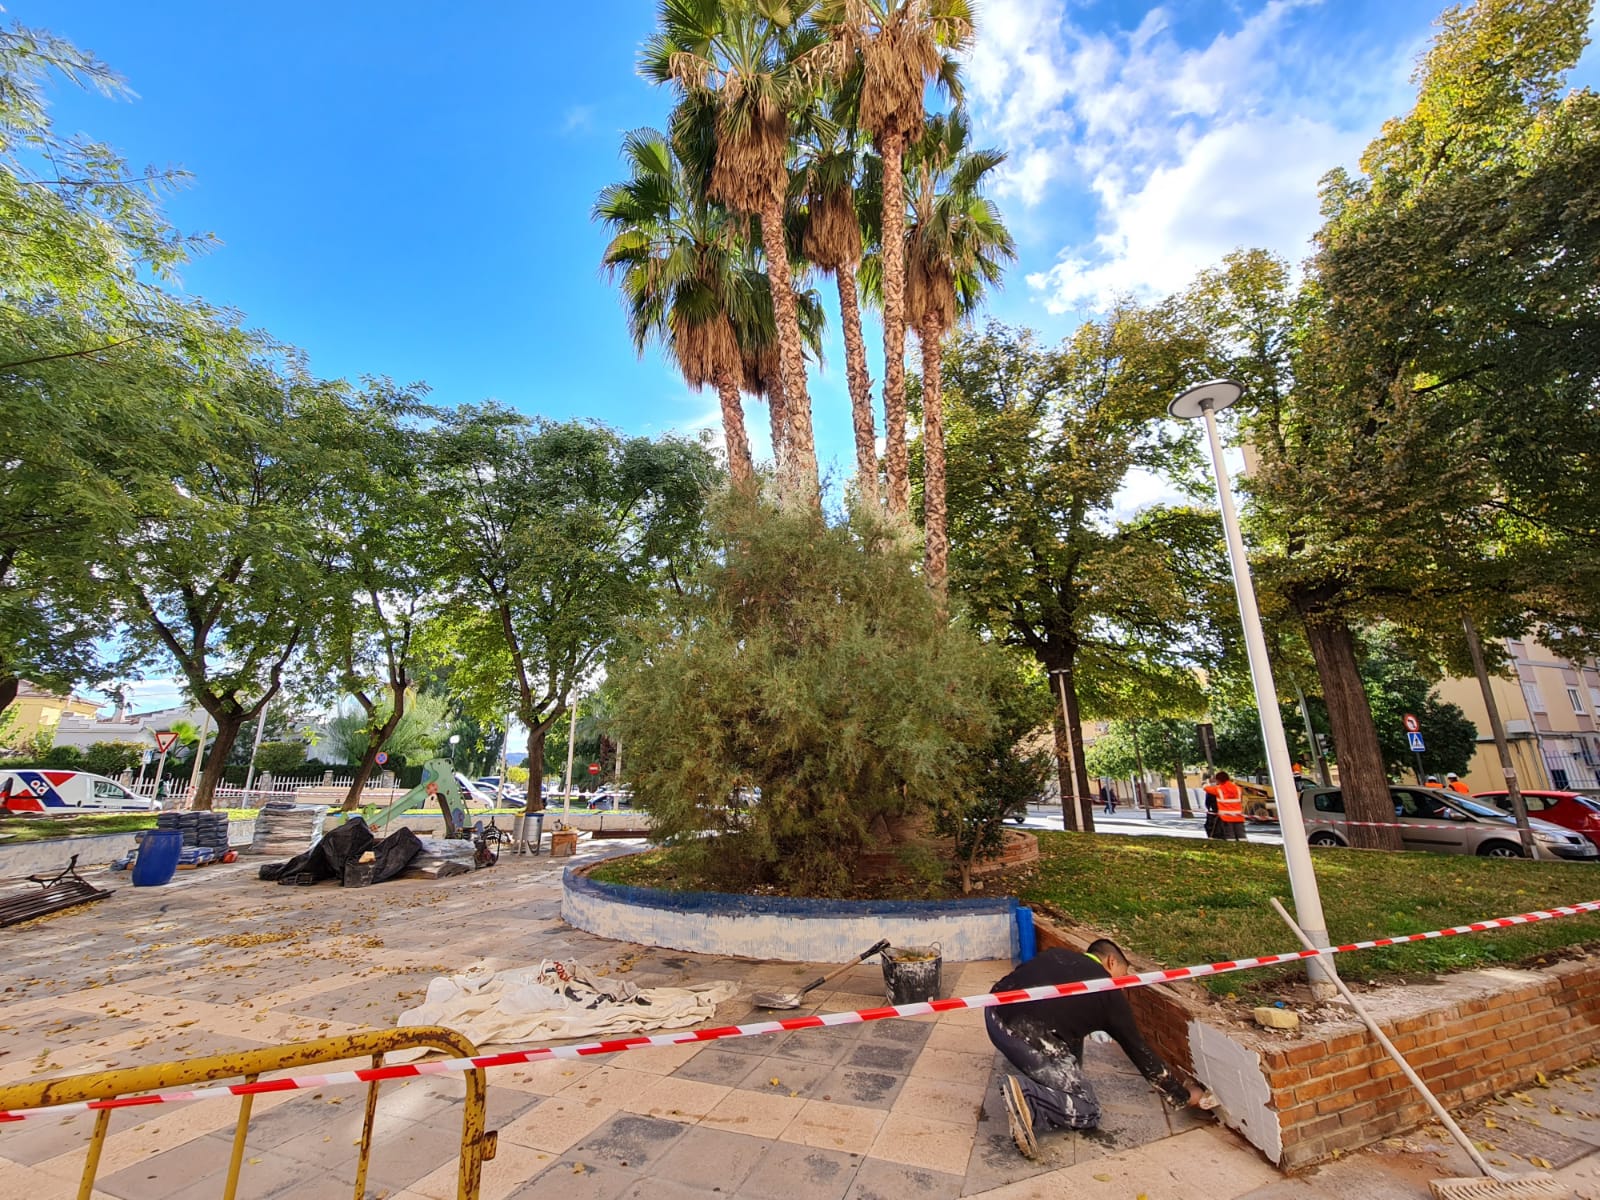 El Ayuntamiento de Elda inicia la remodelación de la plaza situada en la avenida de las Acacias junto al ‘Edificio Chimo’ para renovar el mobiliario urbano y los juegos infantiles